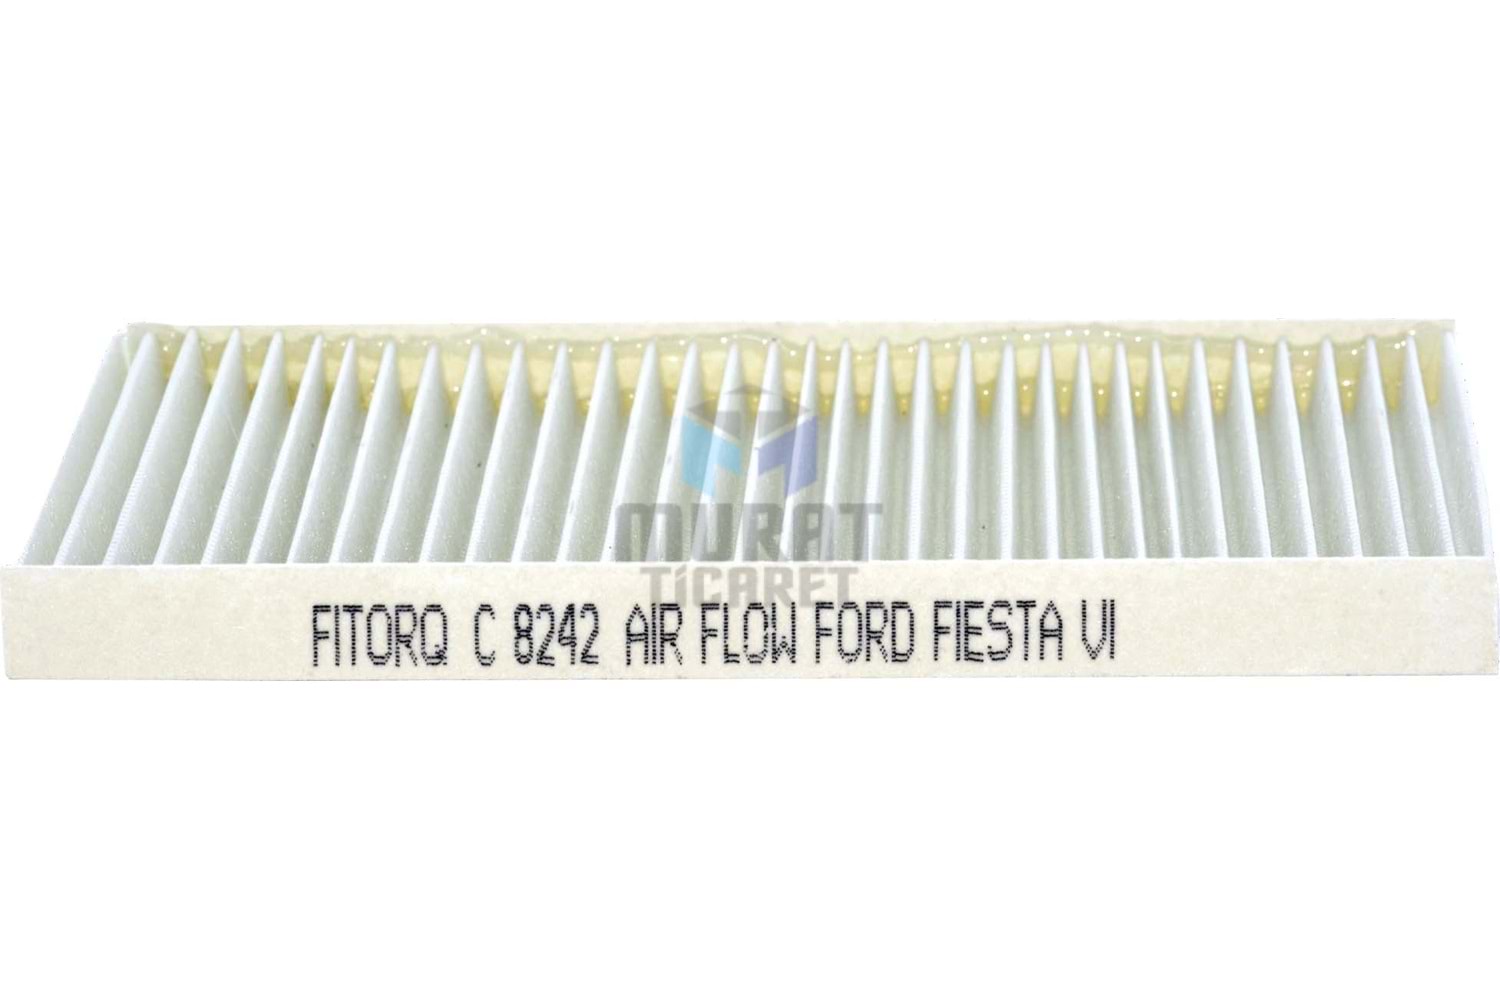 C8242-Polen Filtresi-Yeni Fiesta